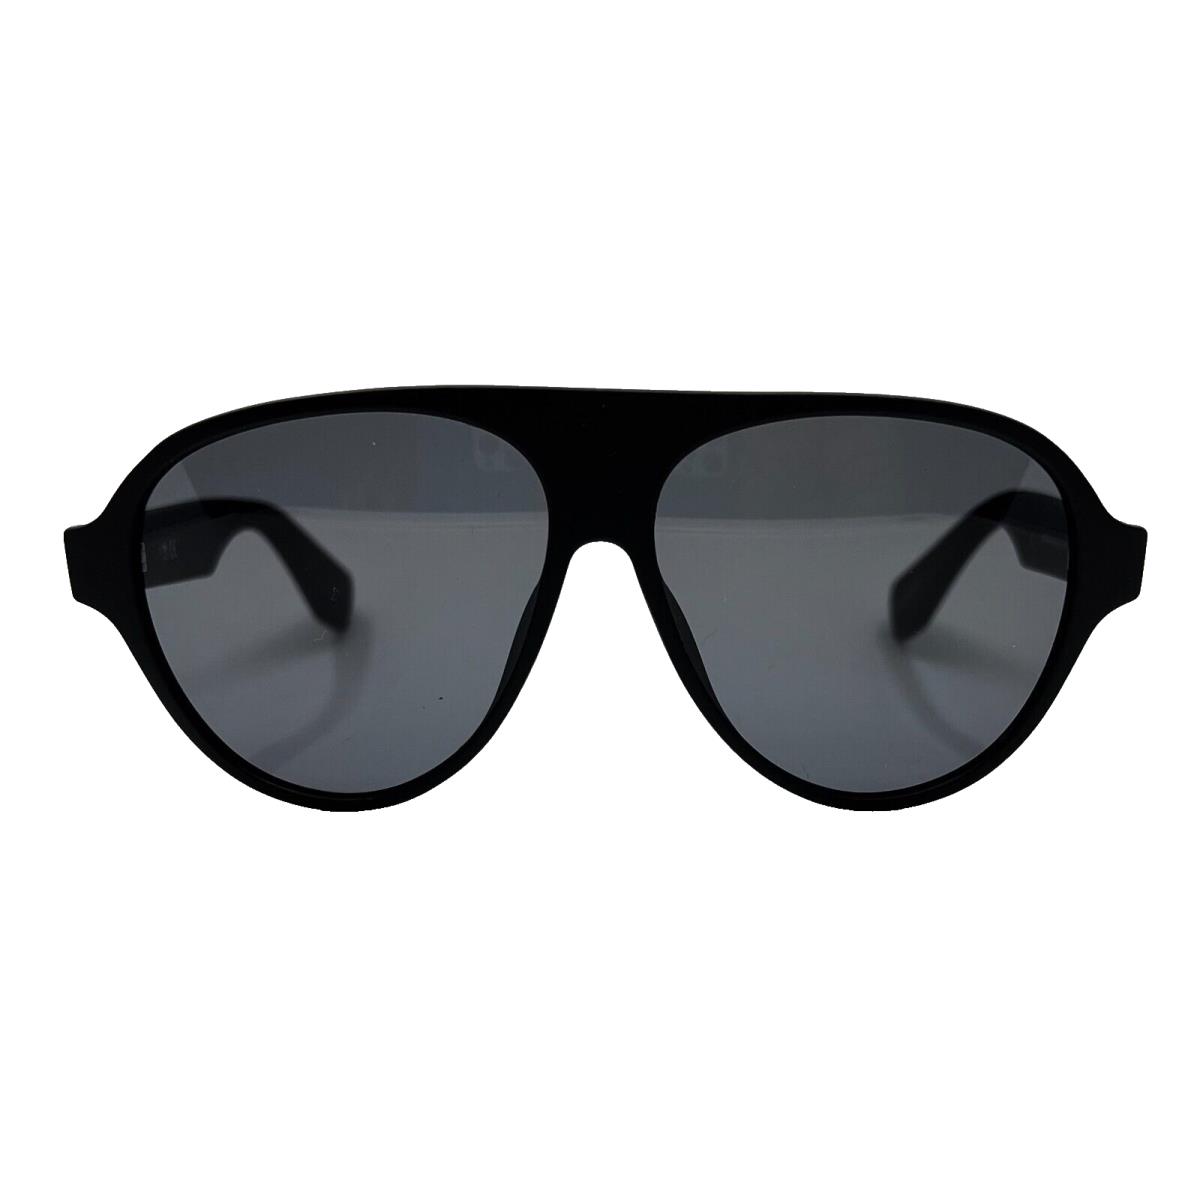 Adidas Originals - OR0059 01A 57/12/145 - Black Sunglasses Case